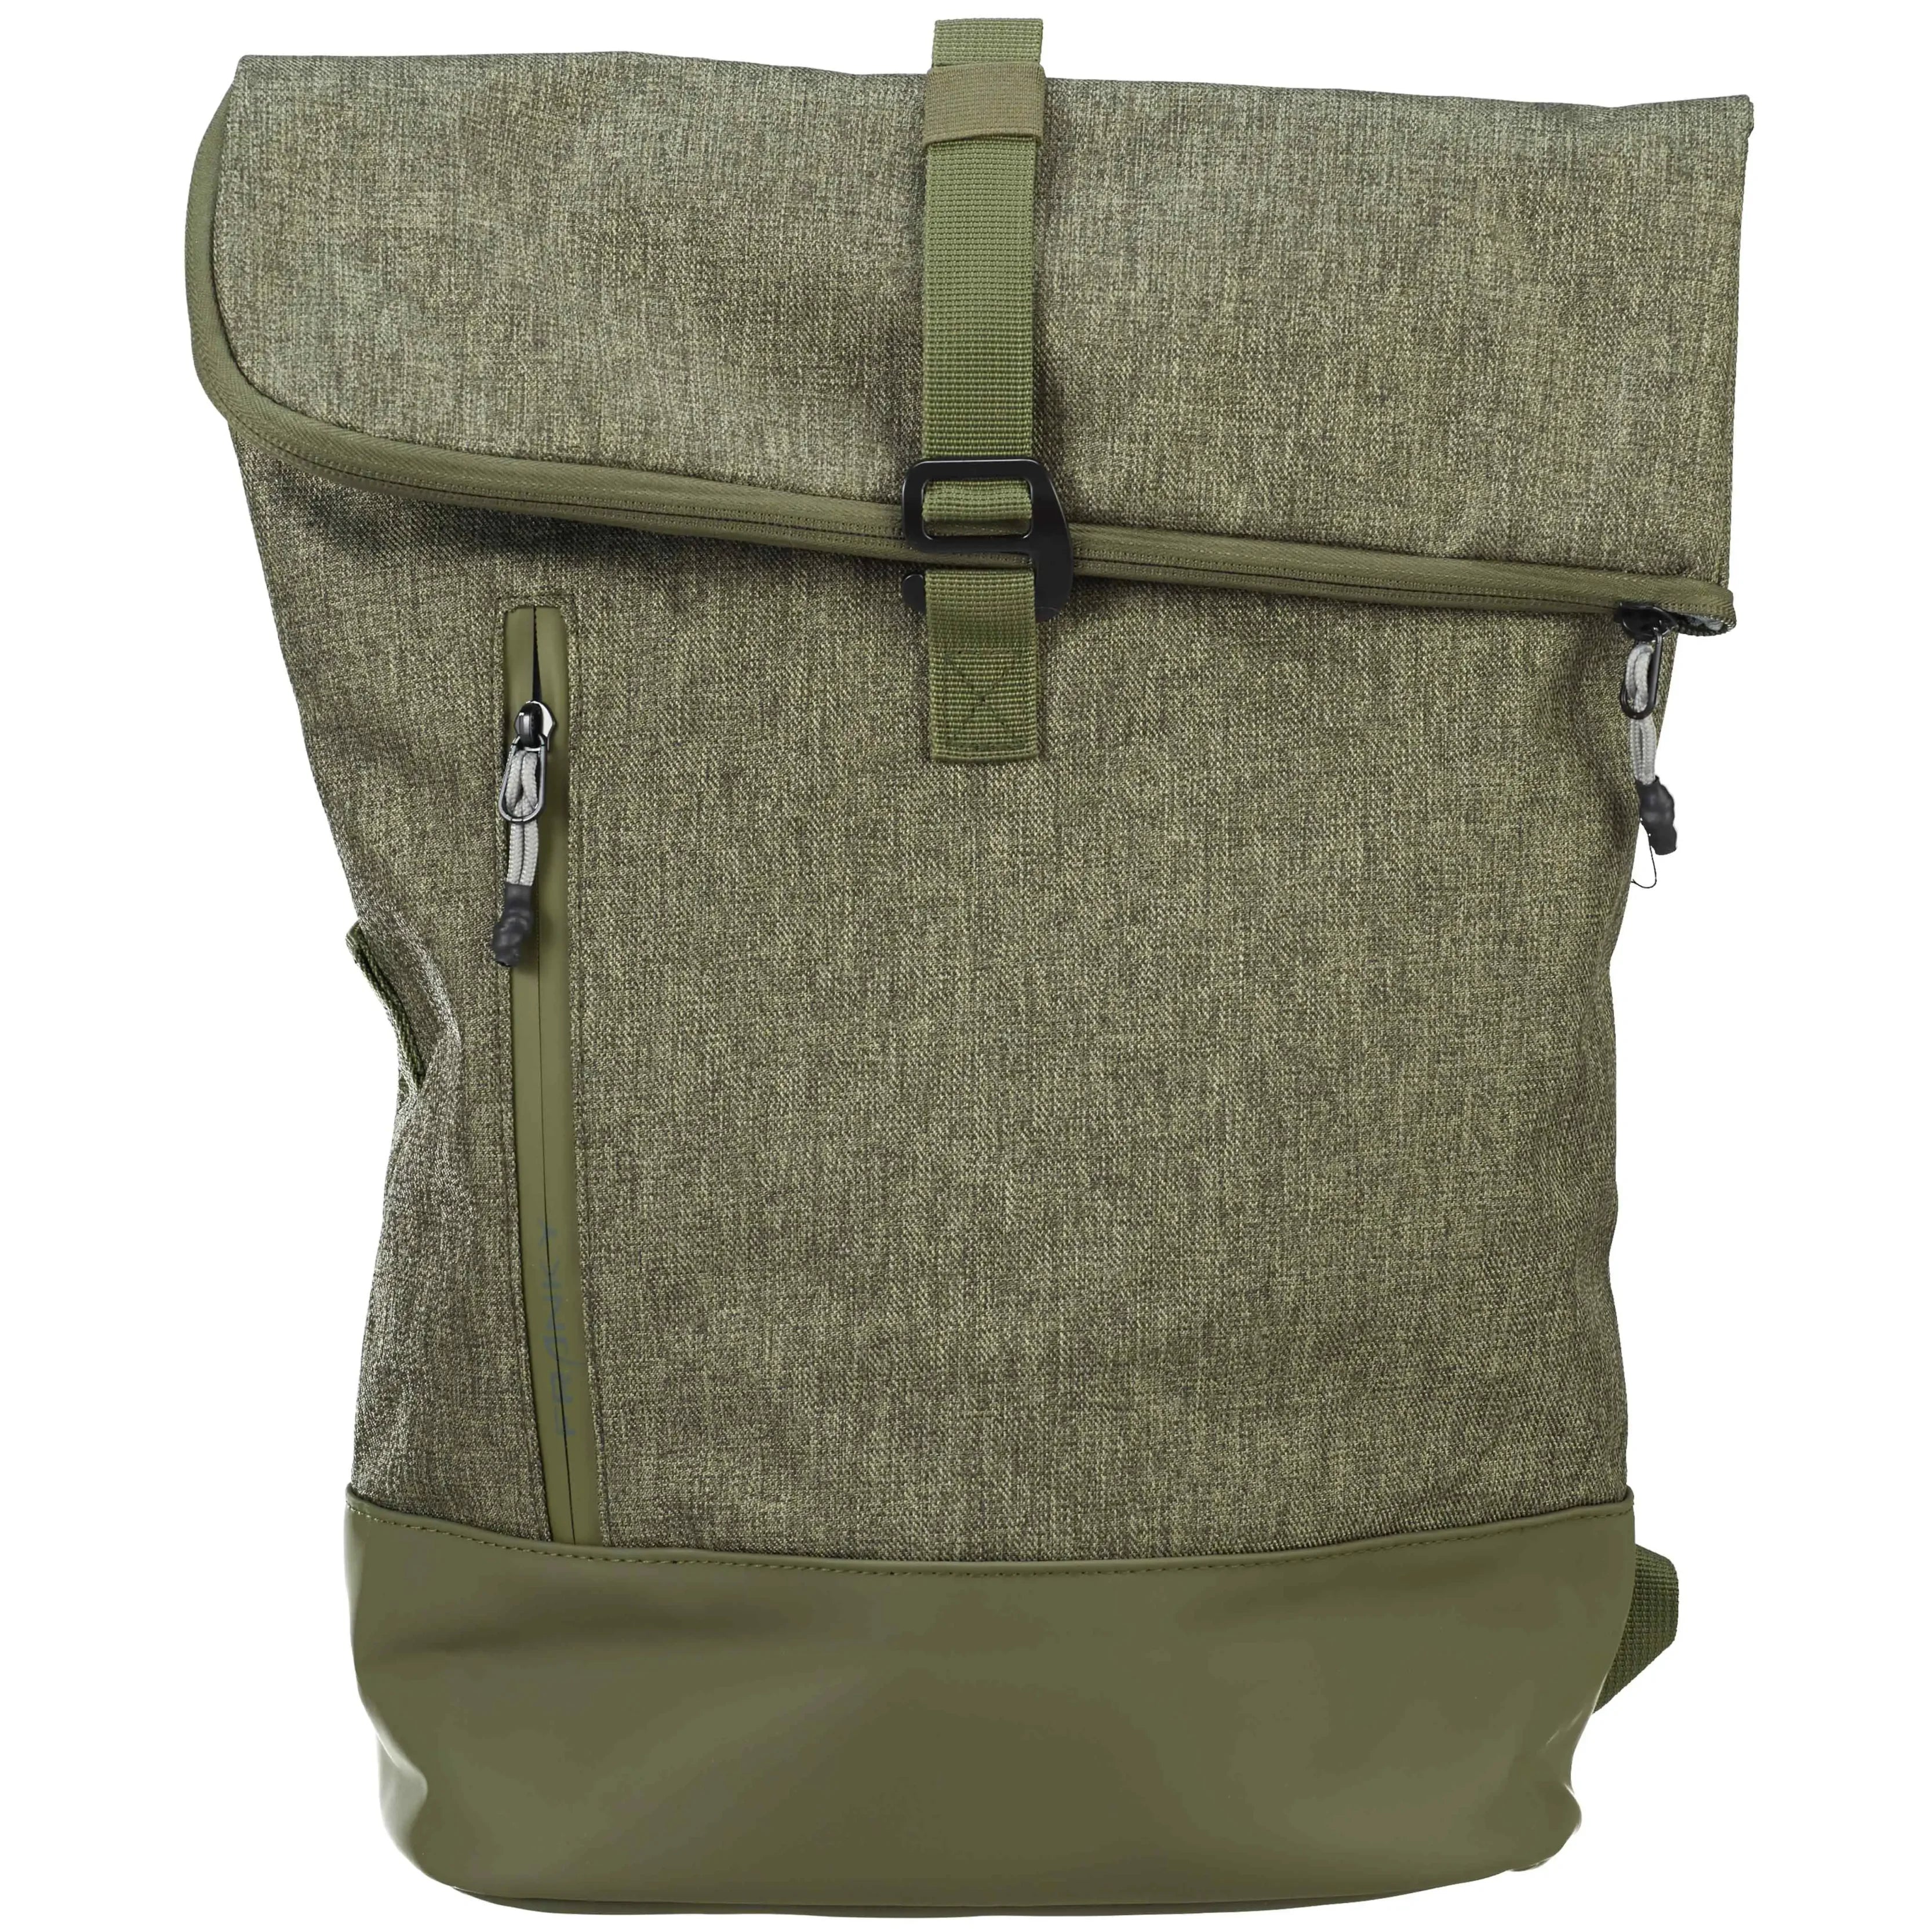 koffer-direkt.de Roll-top backpack 41 cm - olive